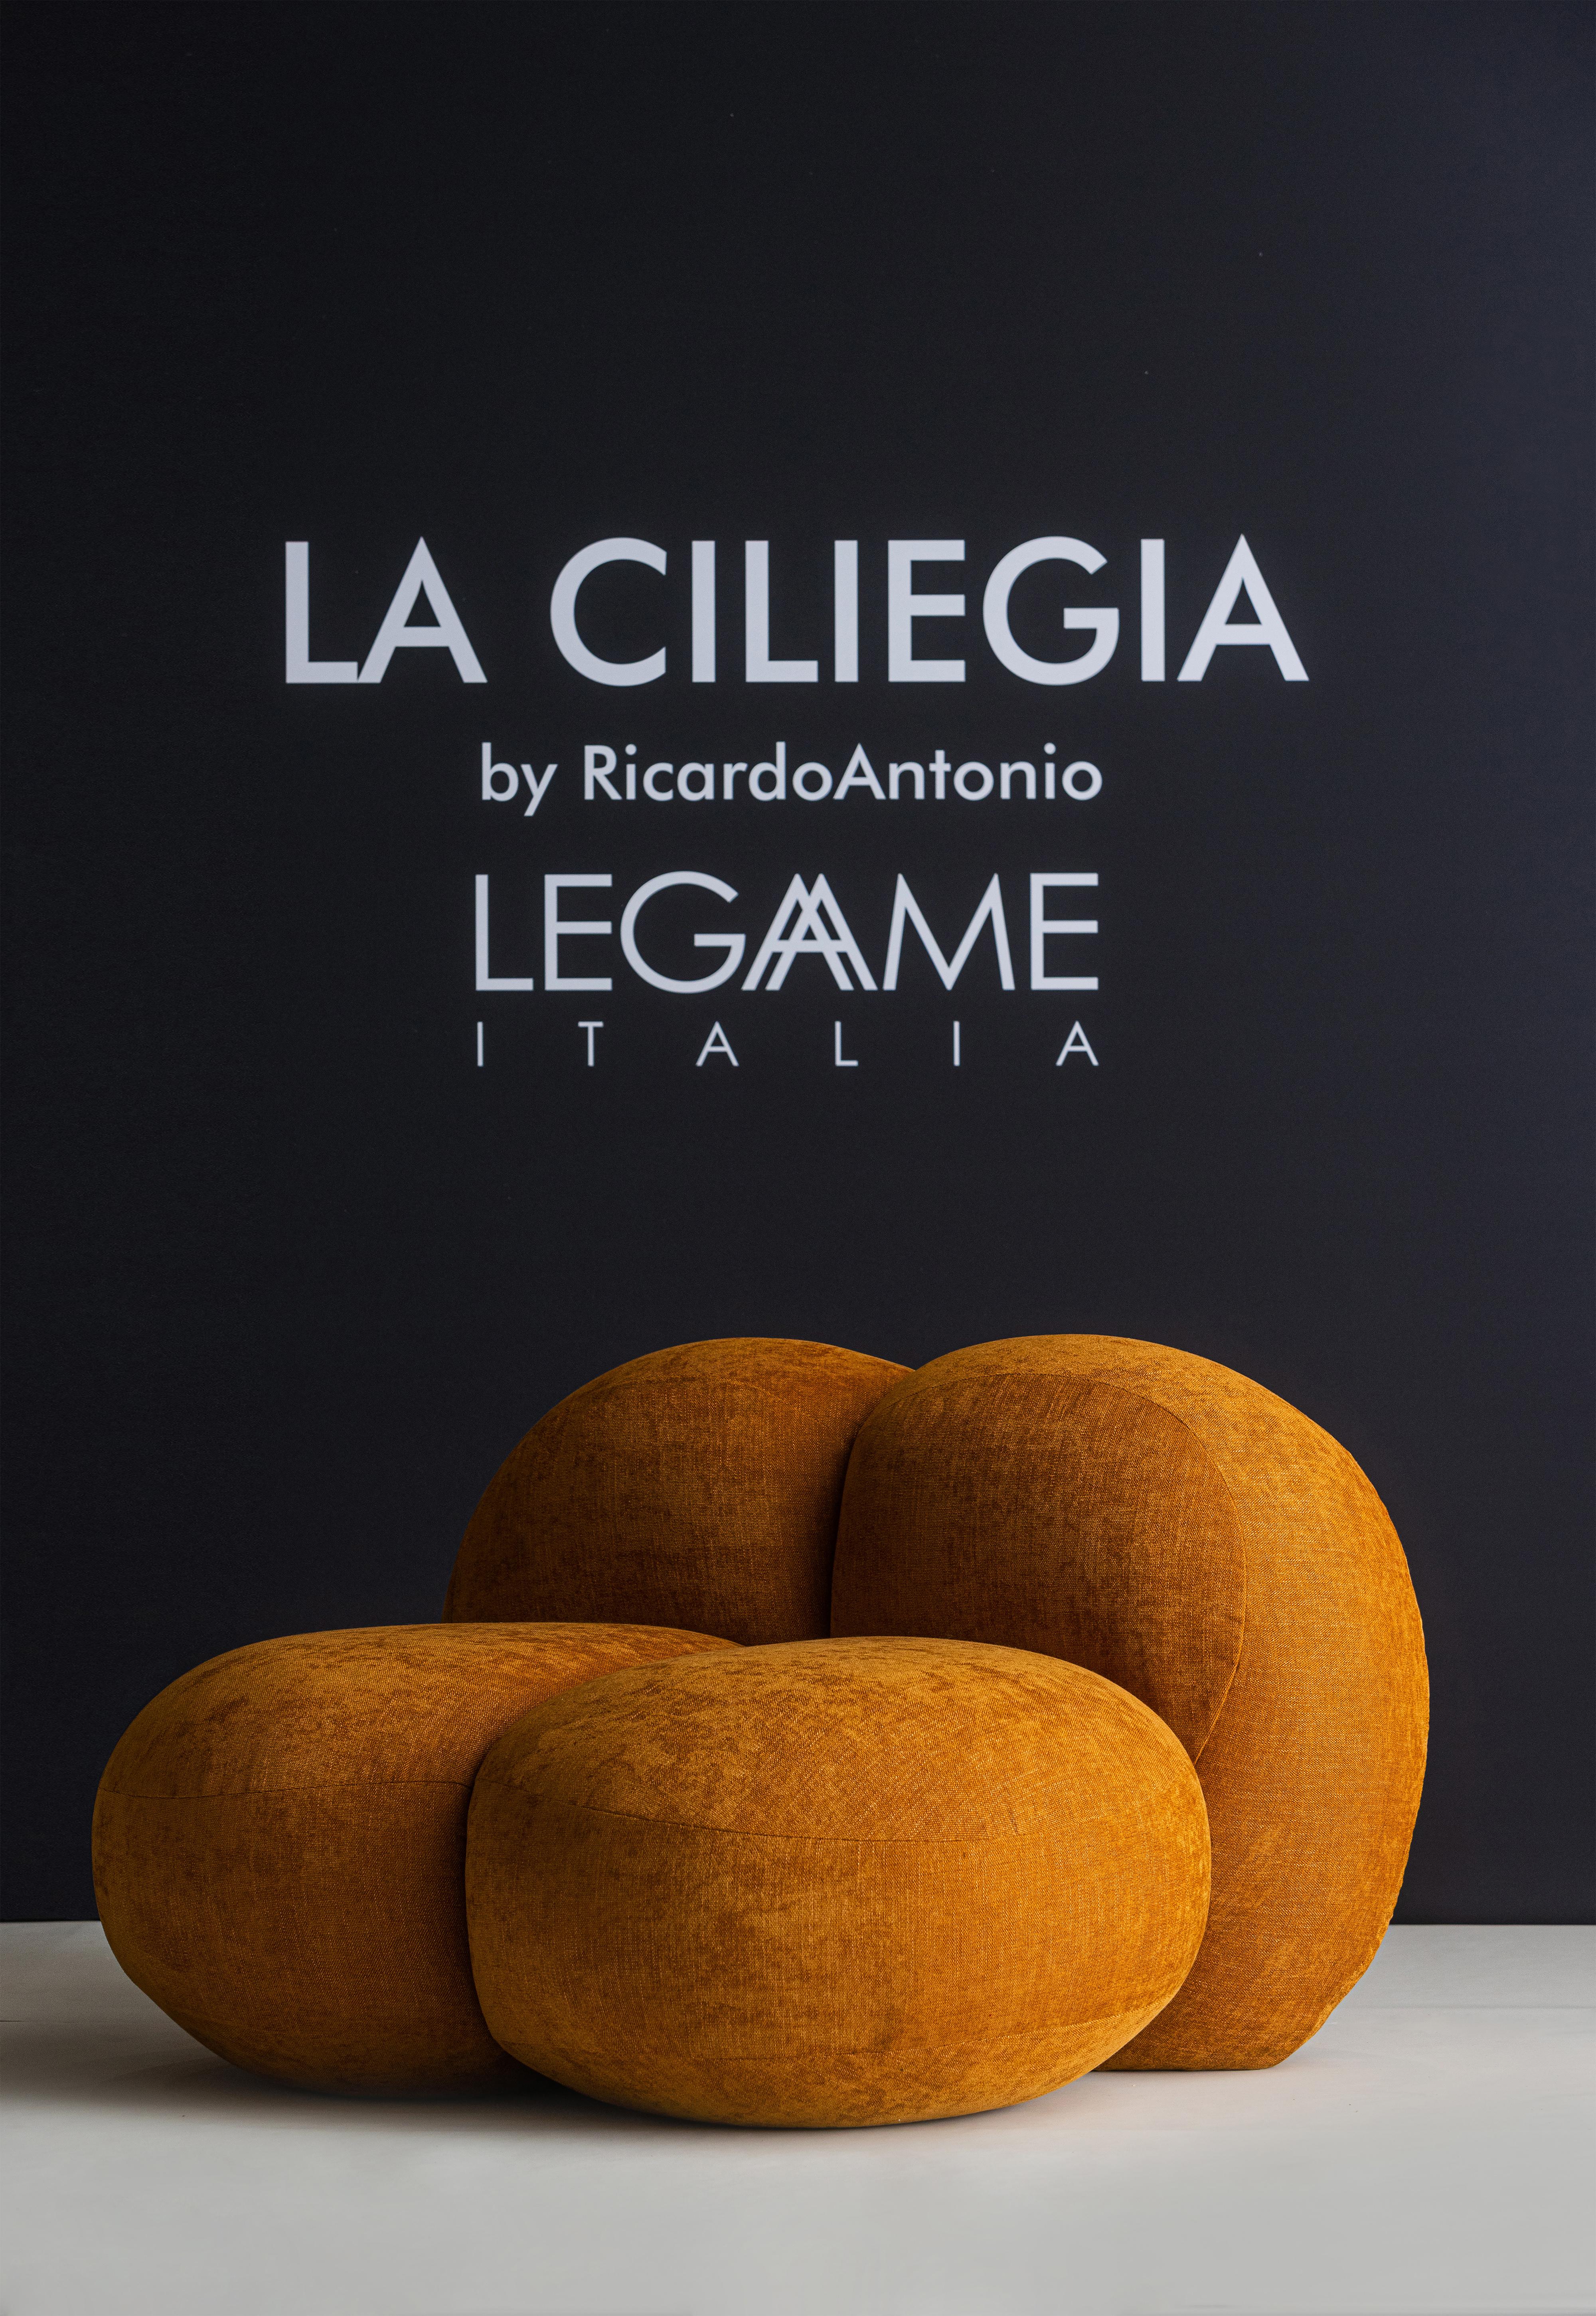 Le designer brésilien Ricardo Antonio, célèbre pour sa capacité à créer des pièces de design emblématiques, a transformé les formes organiques d'un fruit, la cerise, en un fauteuil, un objet distinctif. 
Les proportions sont abondantes et ludiques,